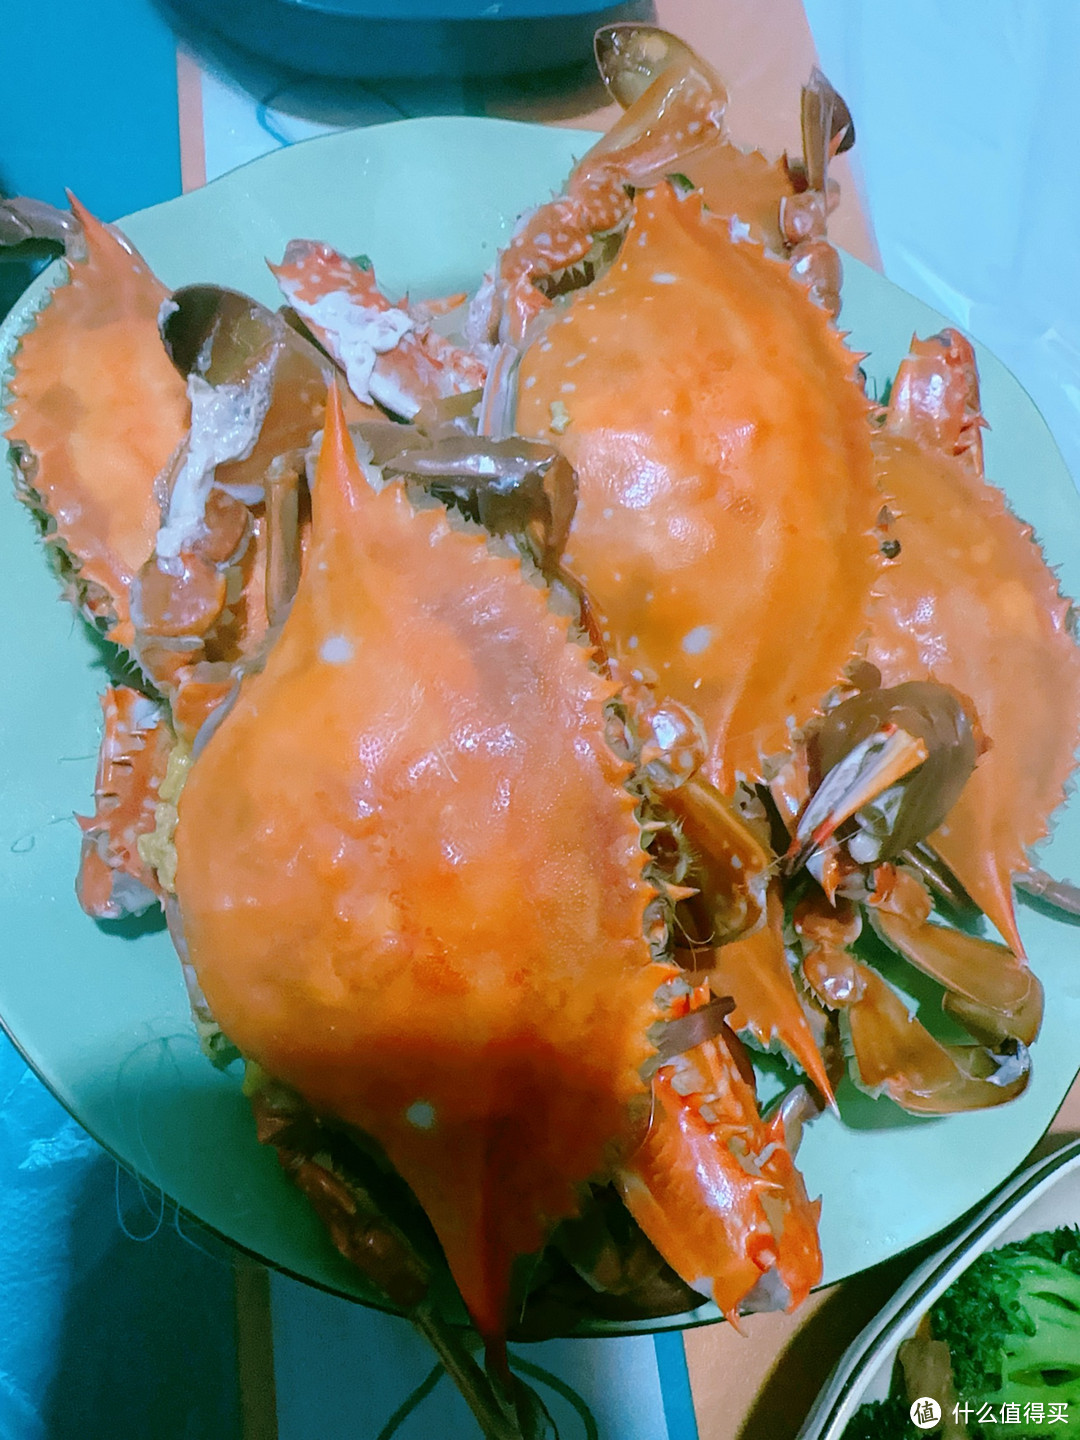 尝遍海鲜，人间美味不过螃蟹虾爬子！